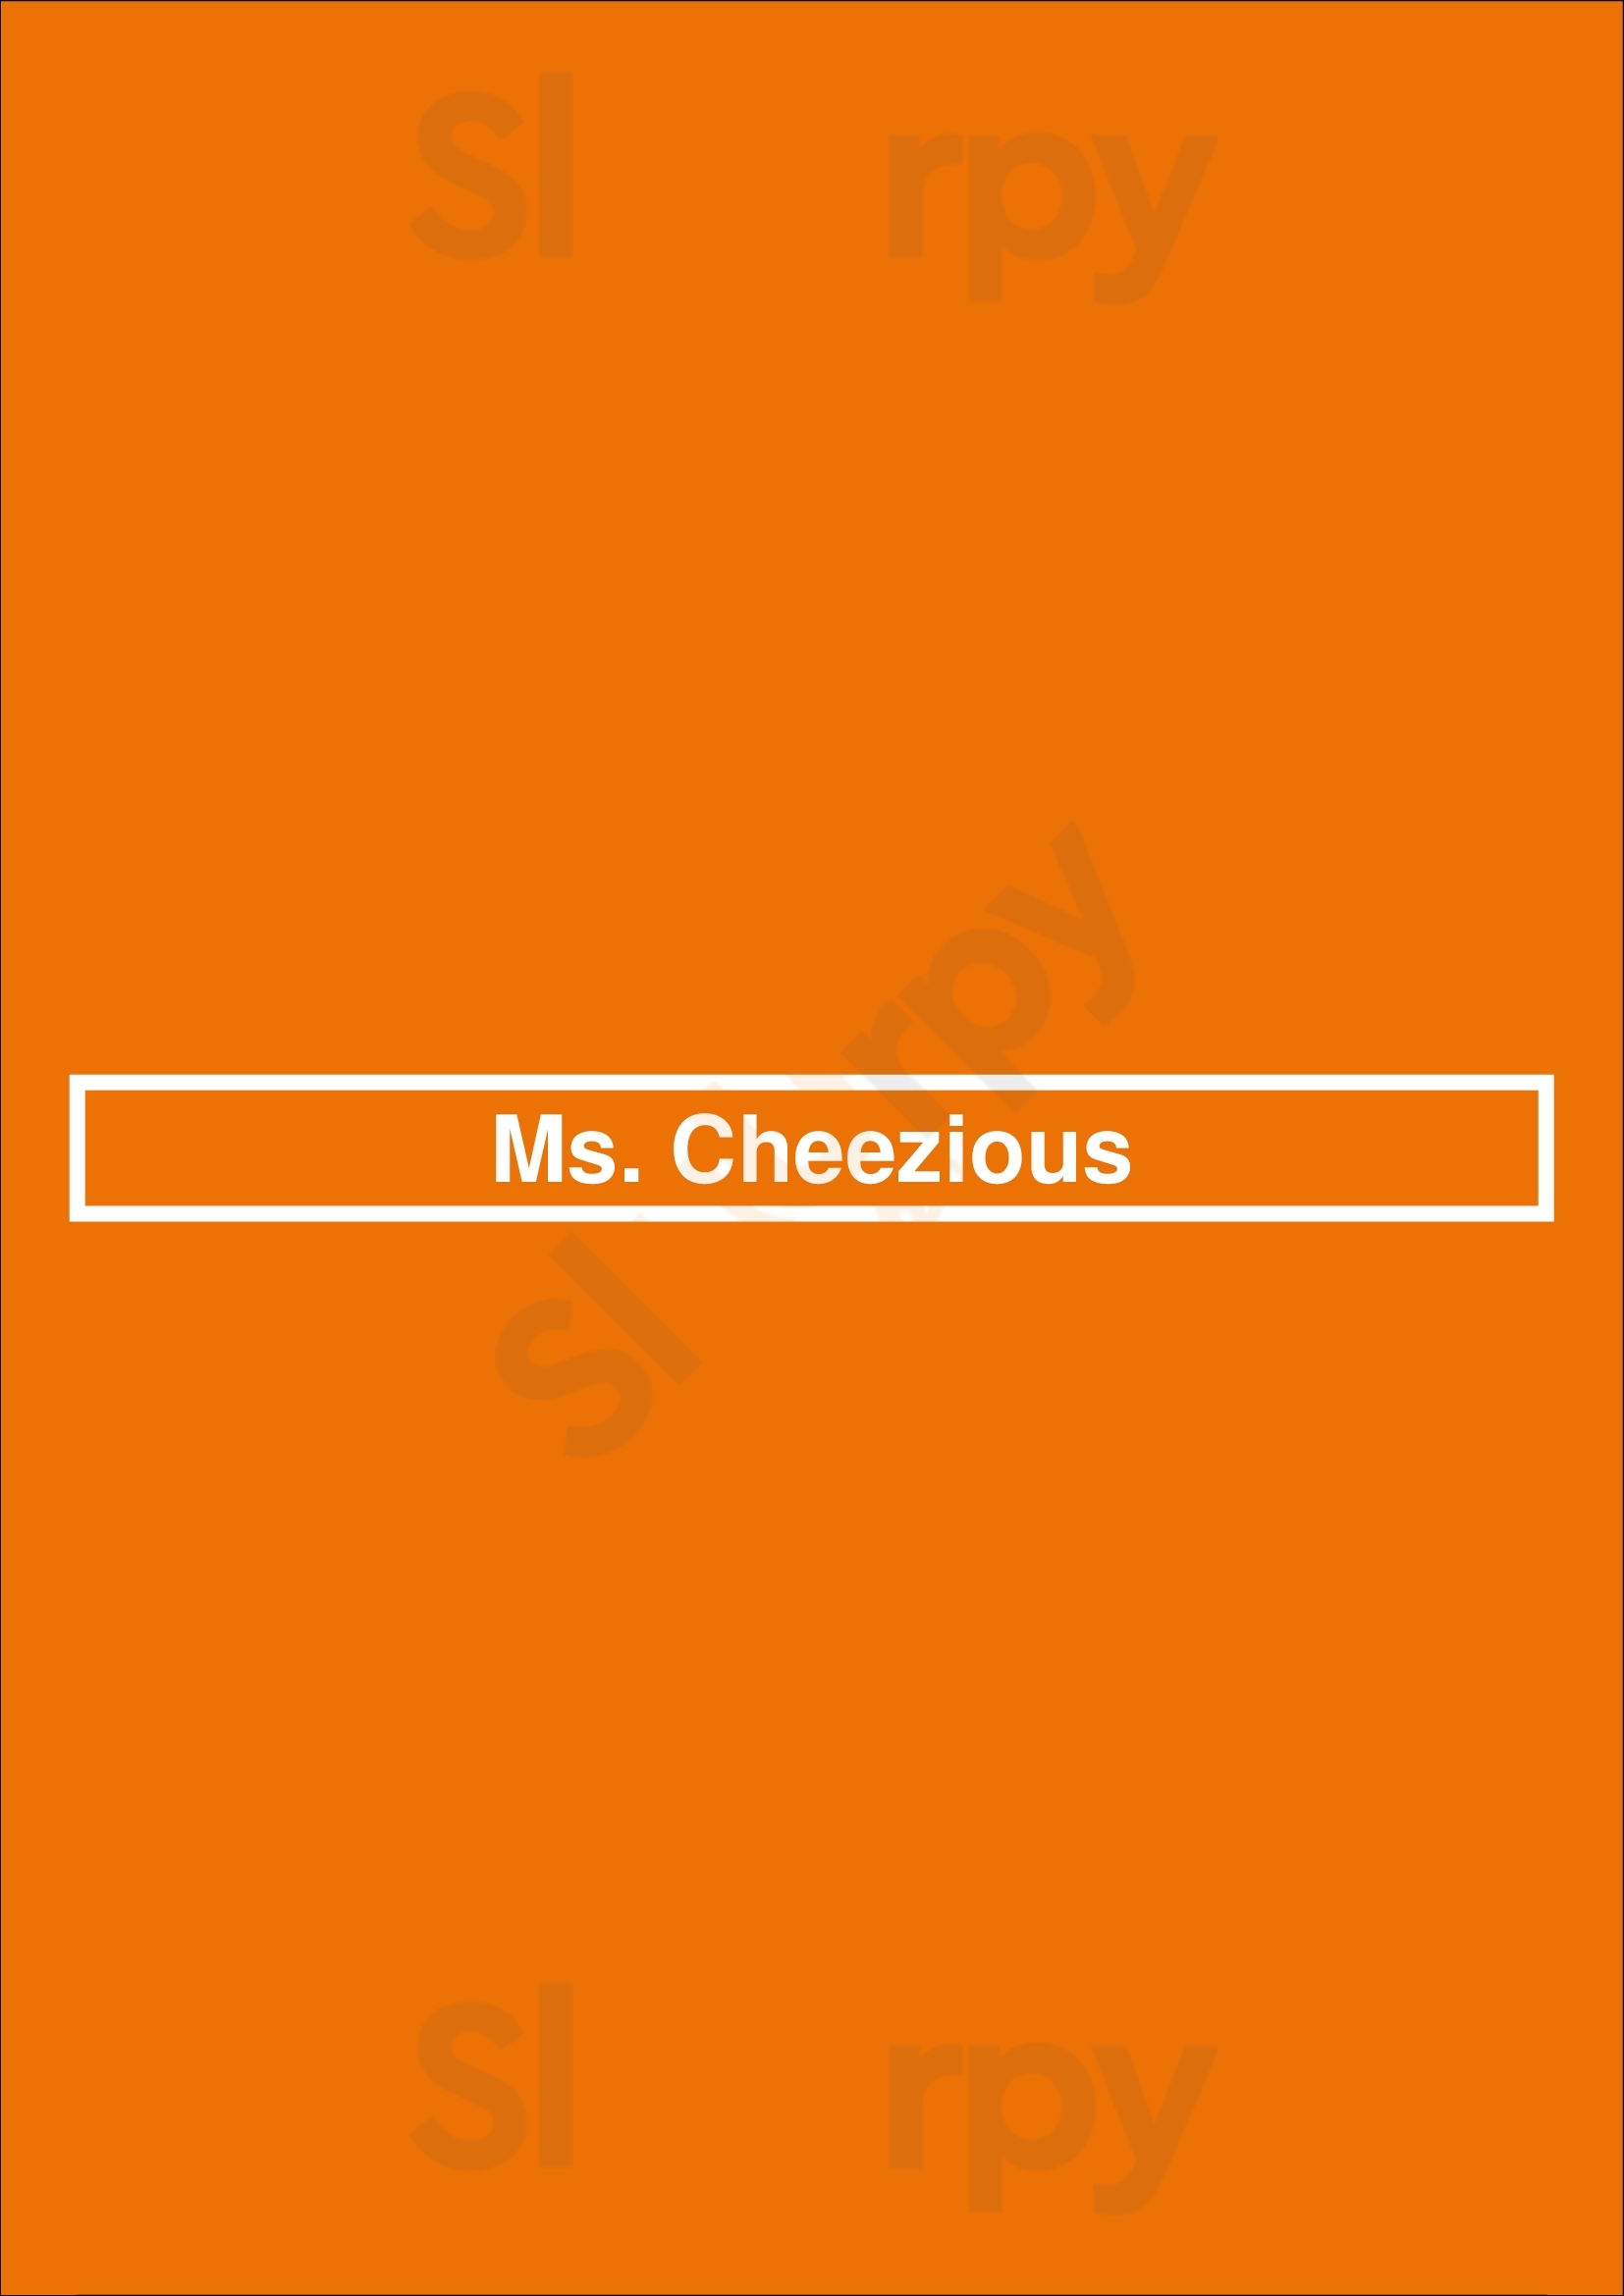 Ms. Cheezious Miami Menu - 1